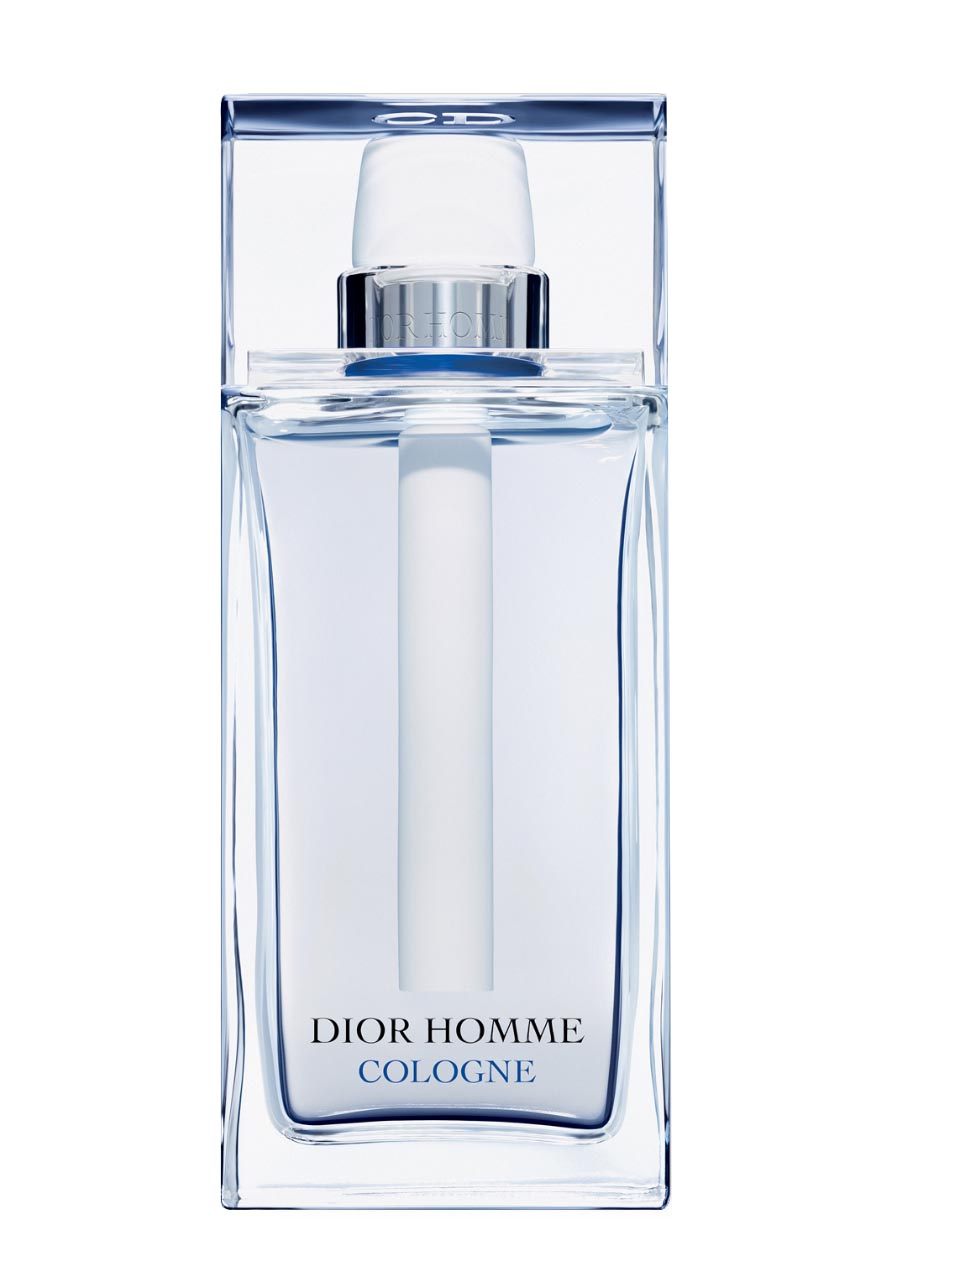 Dior Homme Cologne Eau de Cologne 75 ml null - onesize - 1